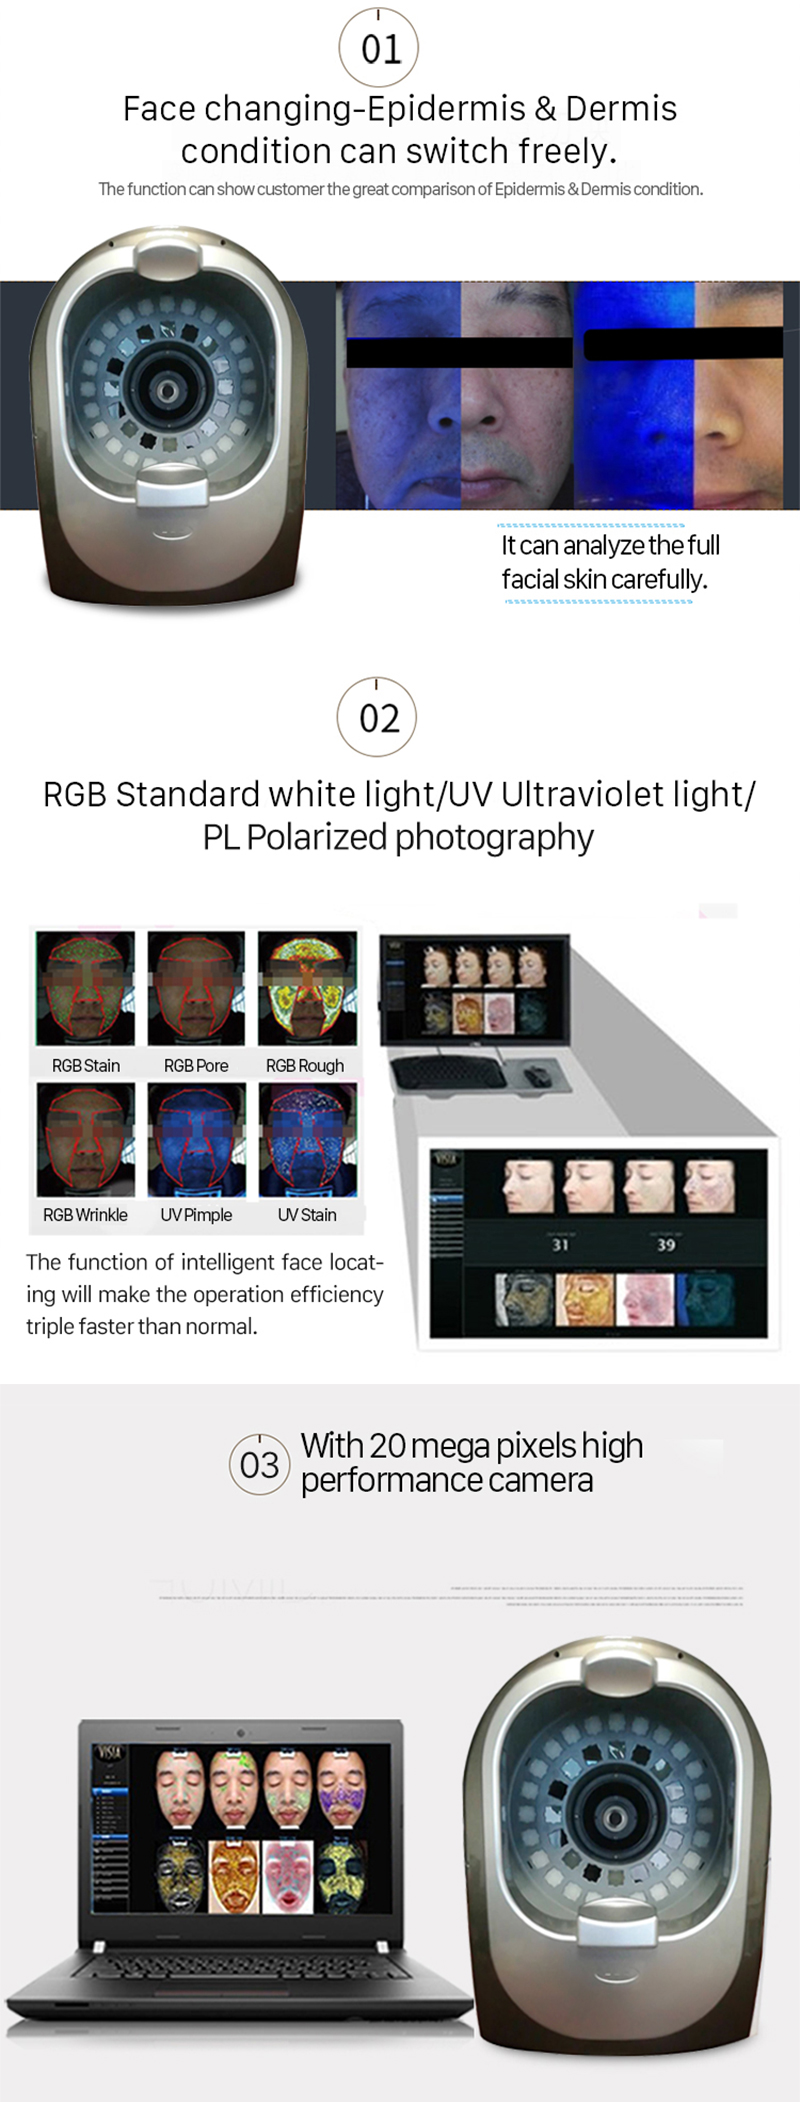 TC20s Six-Spectrum Facial Magic Mirror Մաշկի խնամքի անալիզատոր, որը վերլուծում է դեմքի մաշկի վիճակը